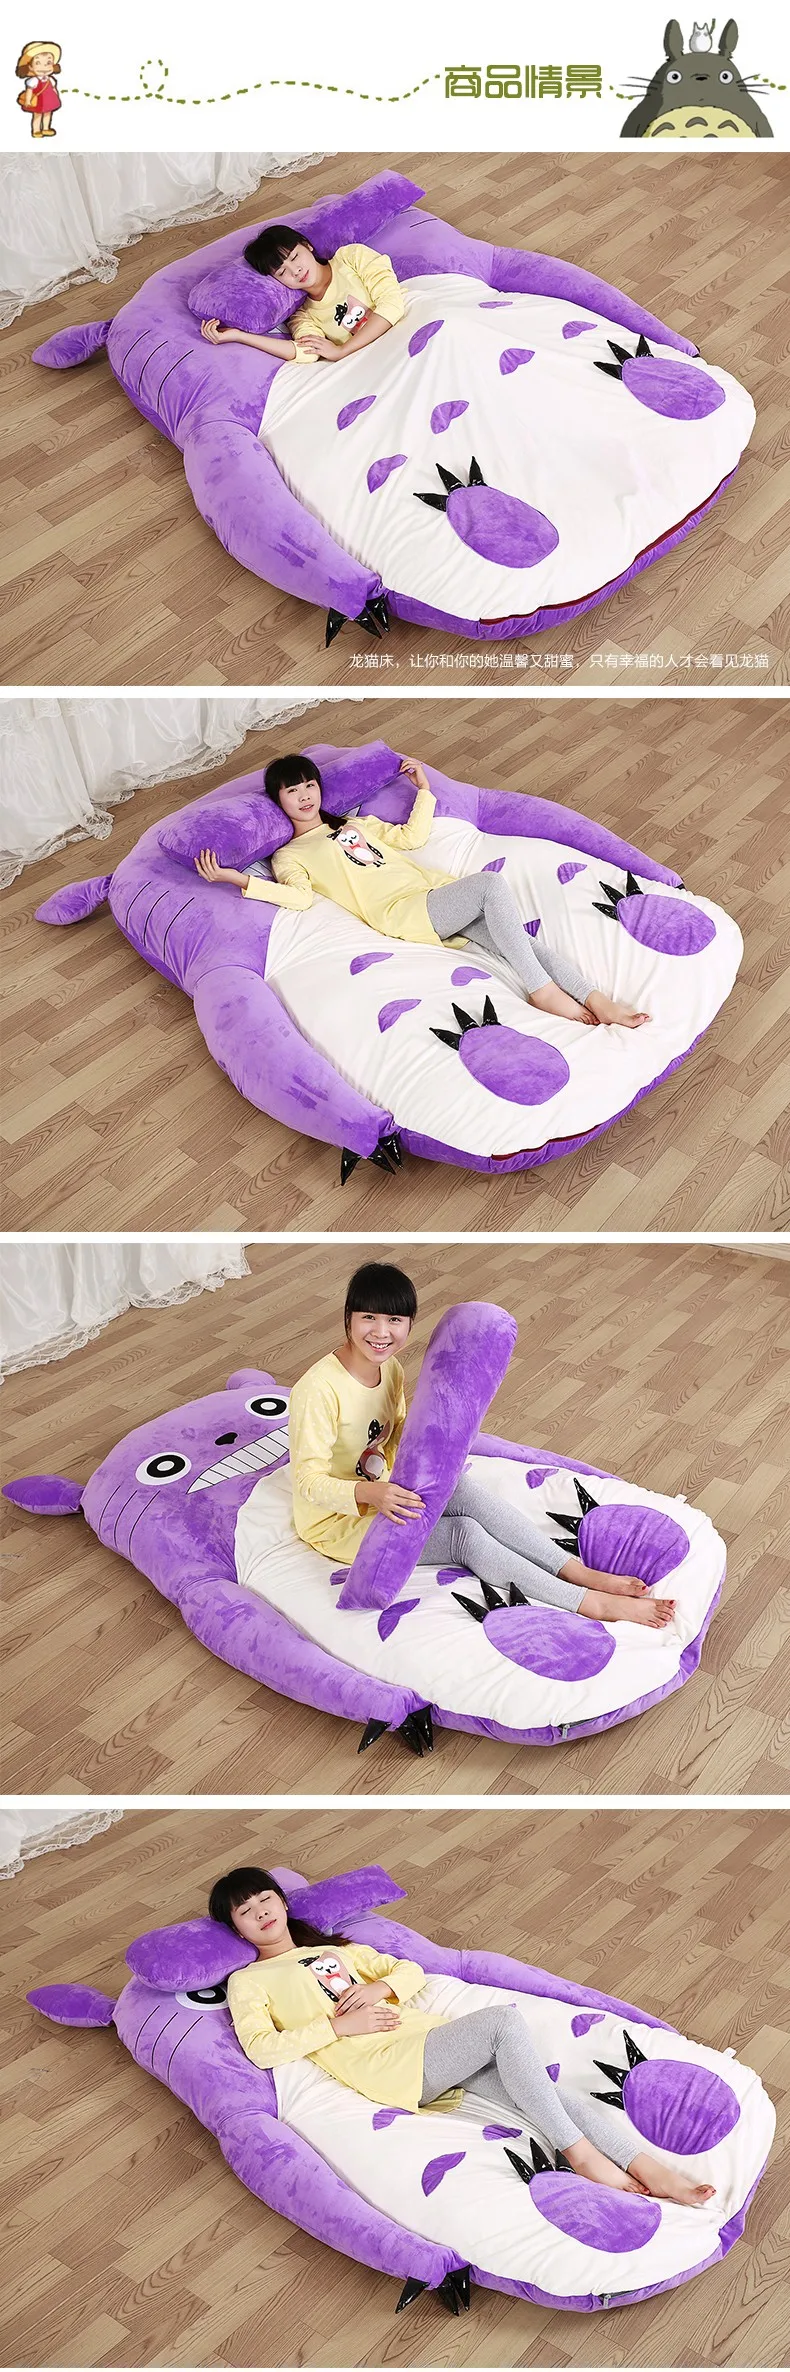 Огромный матрас фиолетовый Тоторо спальный коврик мягкий утолщенный мультяшный спальный мешок лежак диван коврик для одиночной или двойной подушки коврик